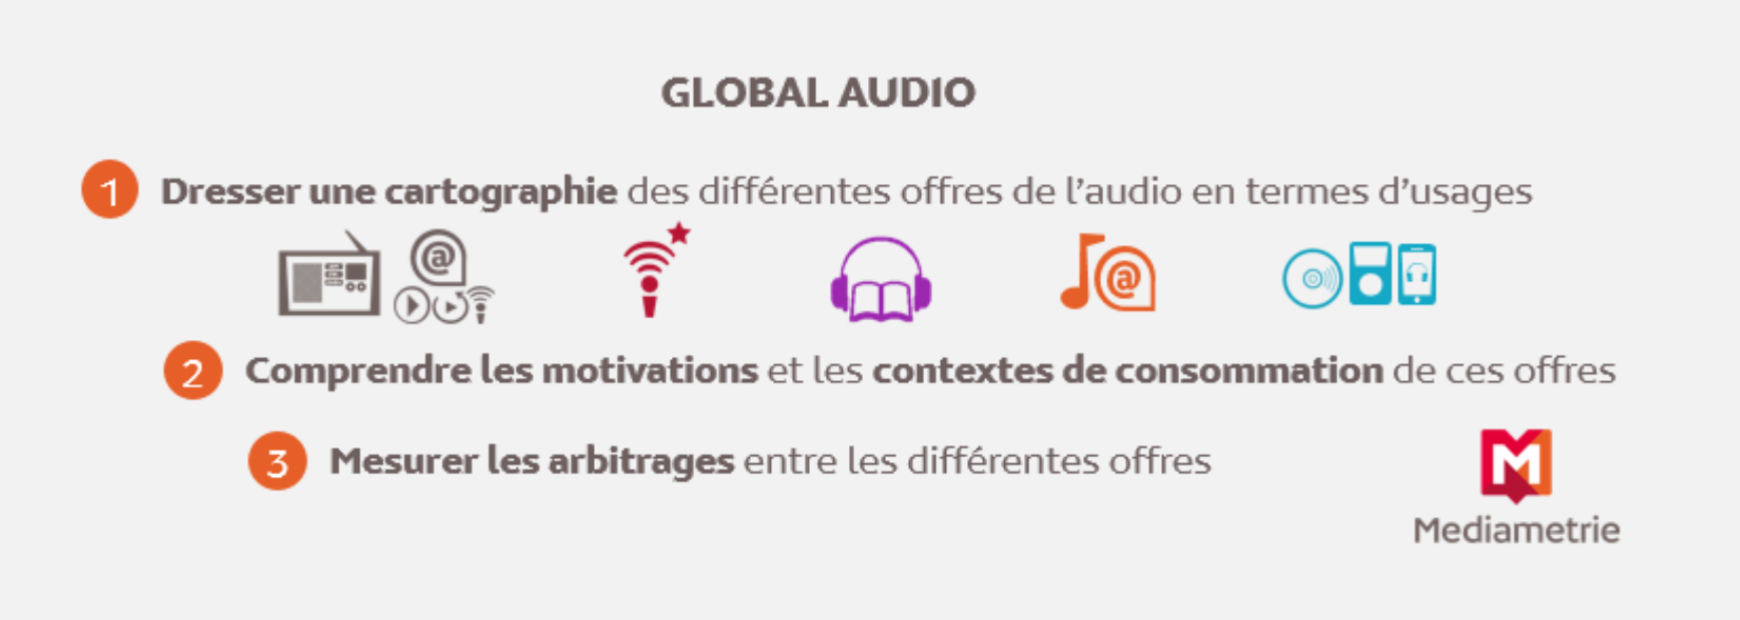 Médiamétrie lance "Global Audio"